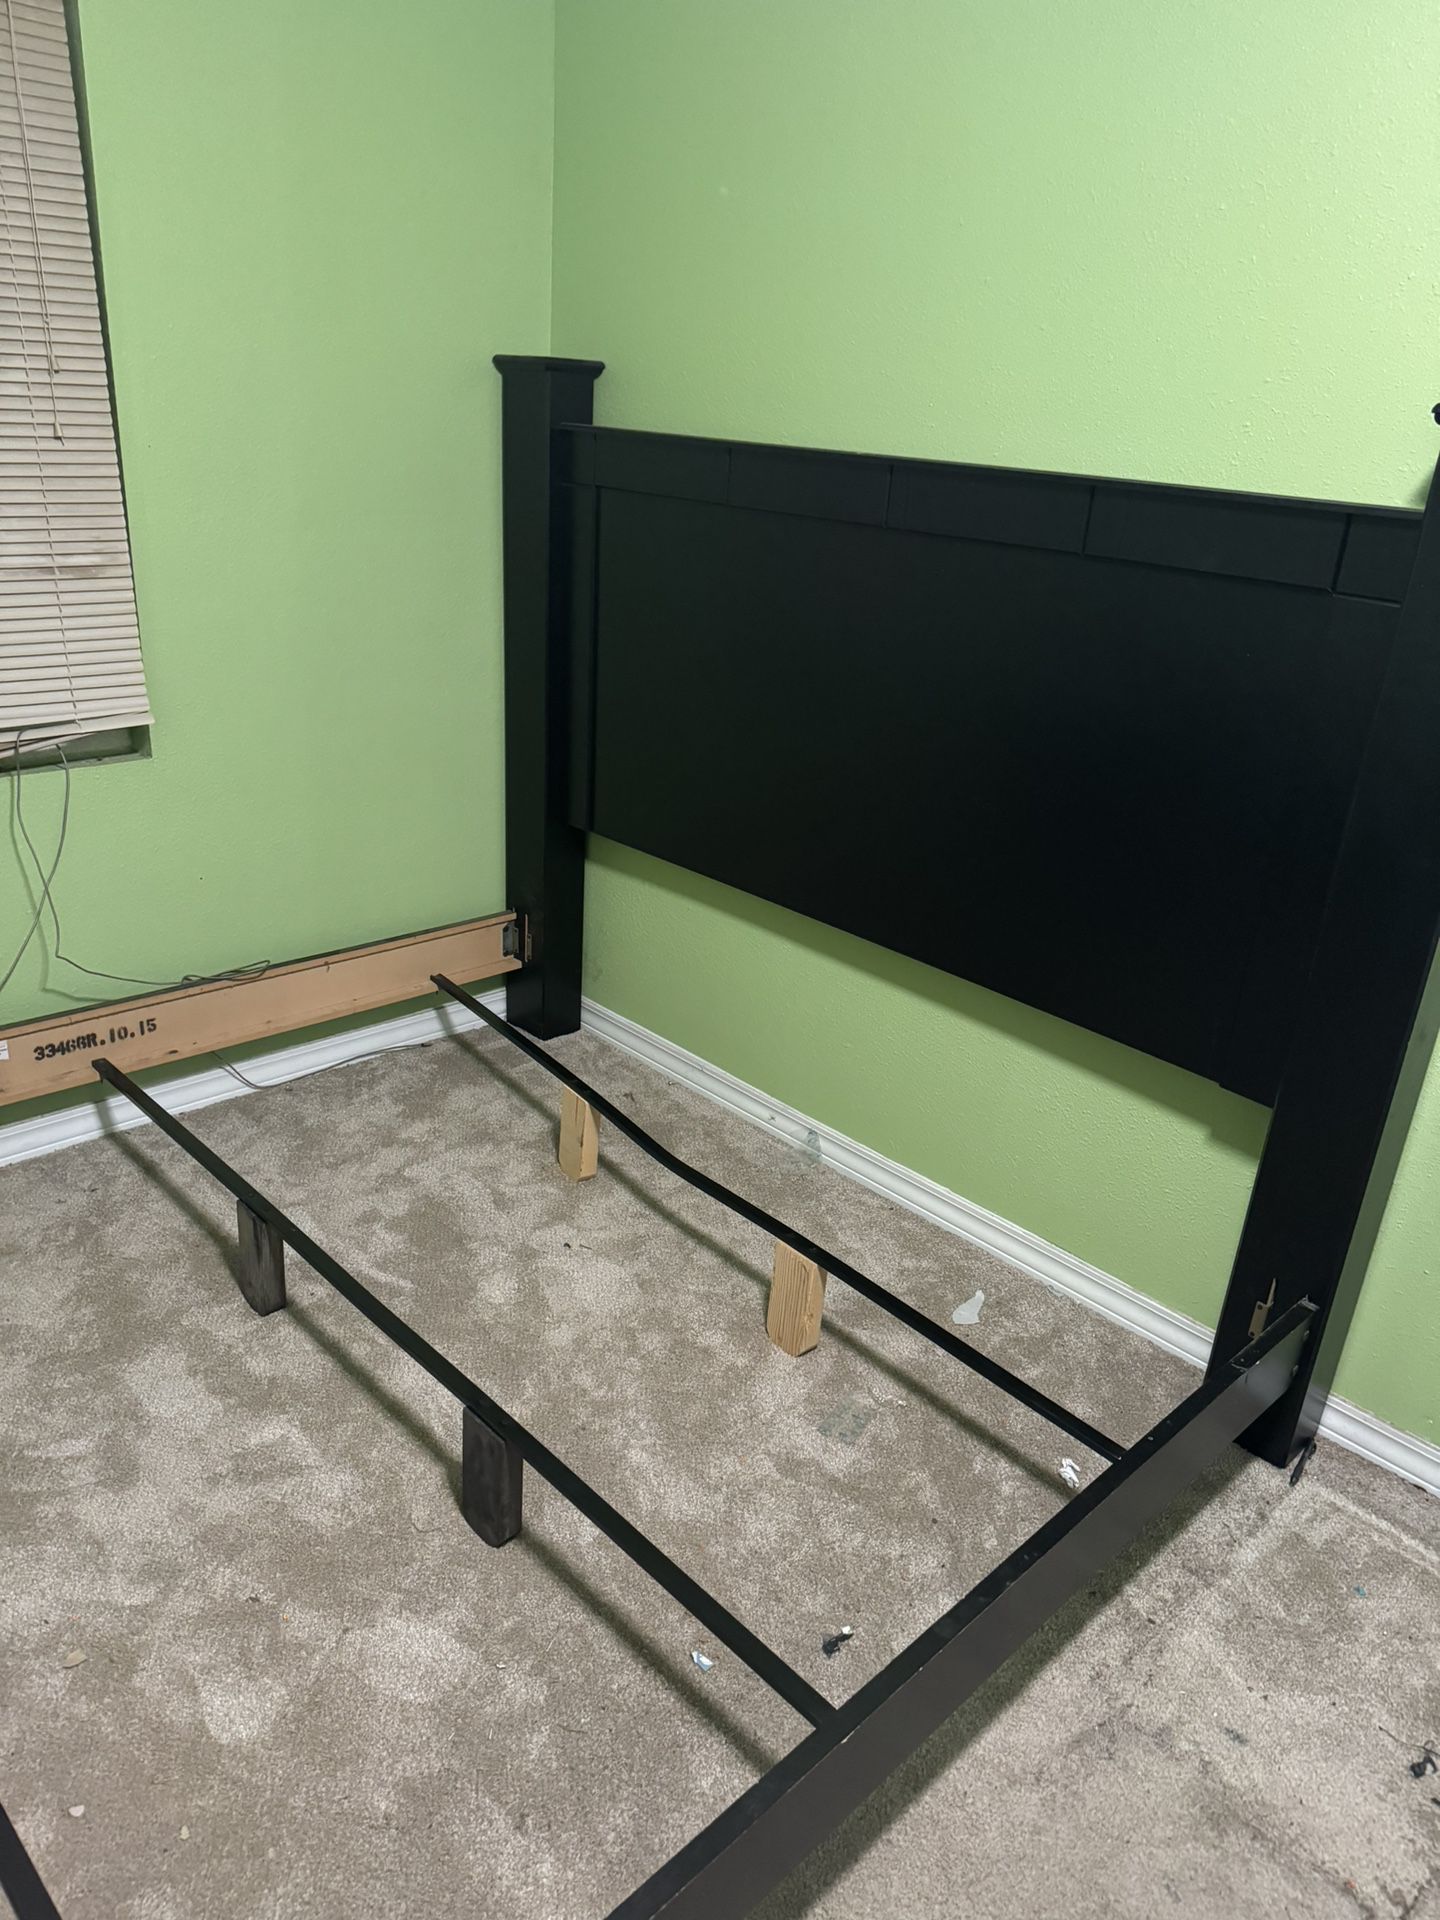 Bed Frame (kind Size) And Dresser